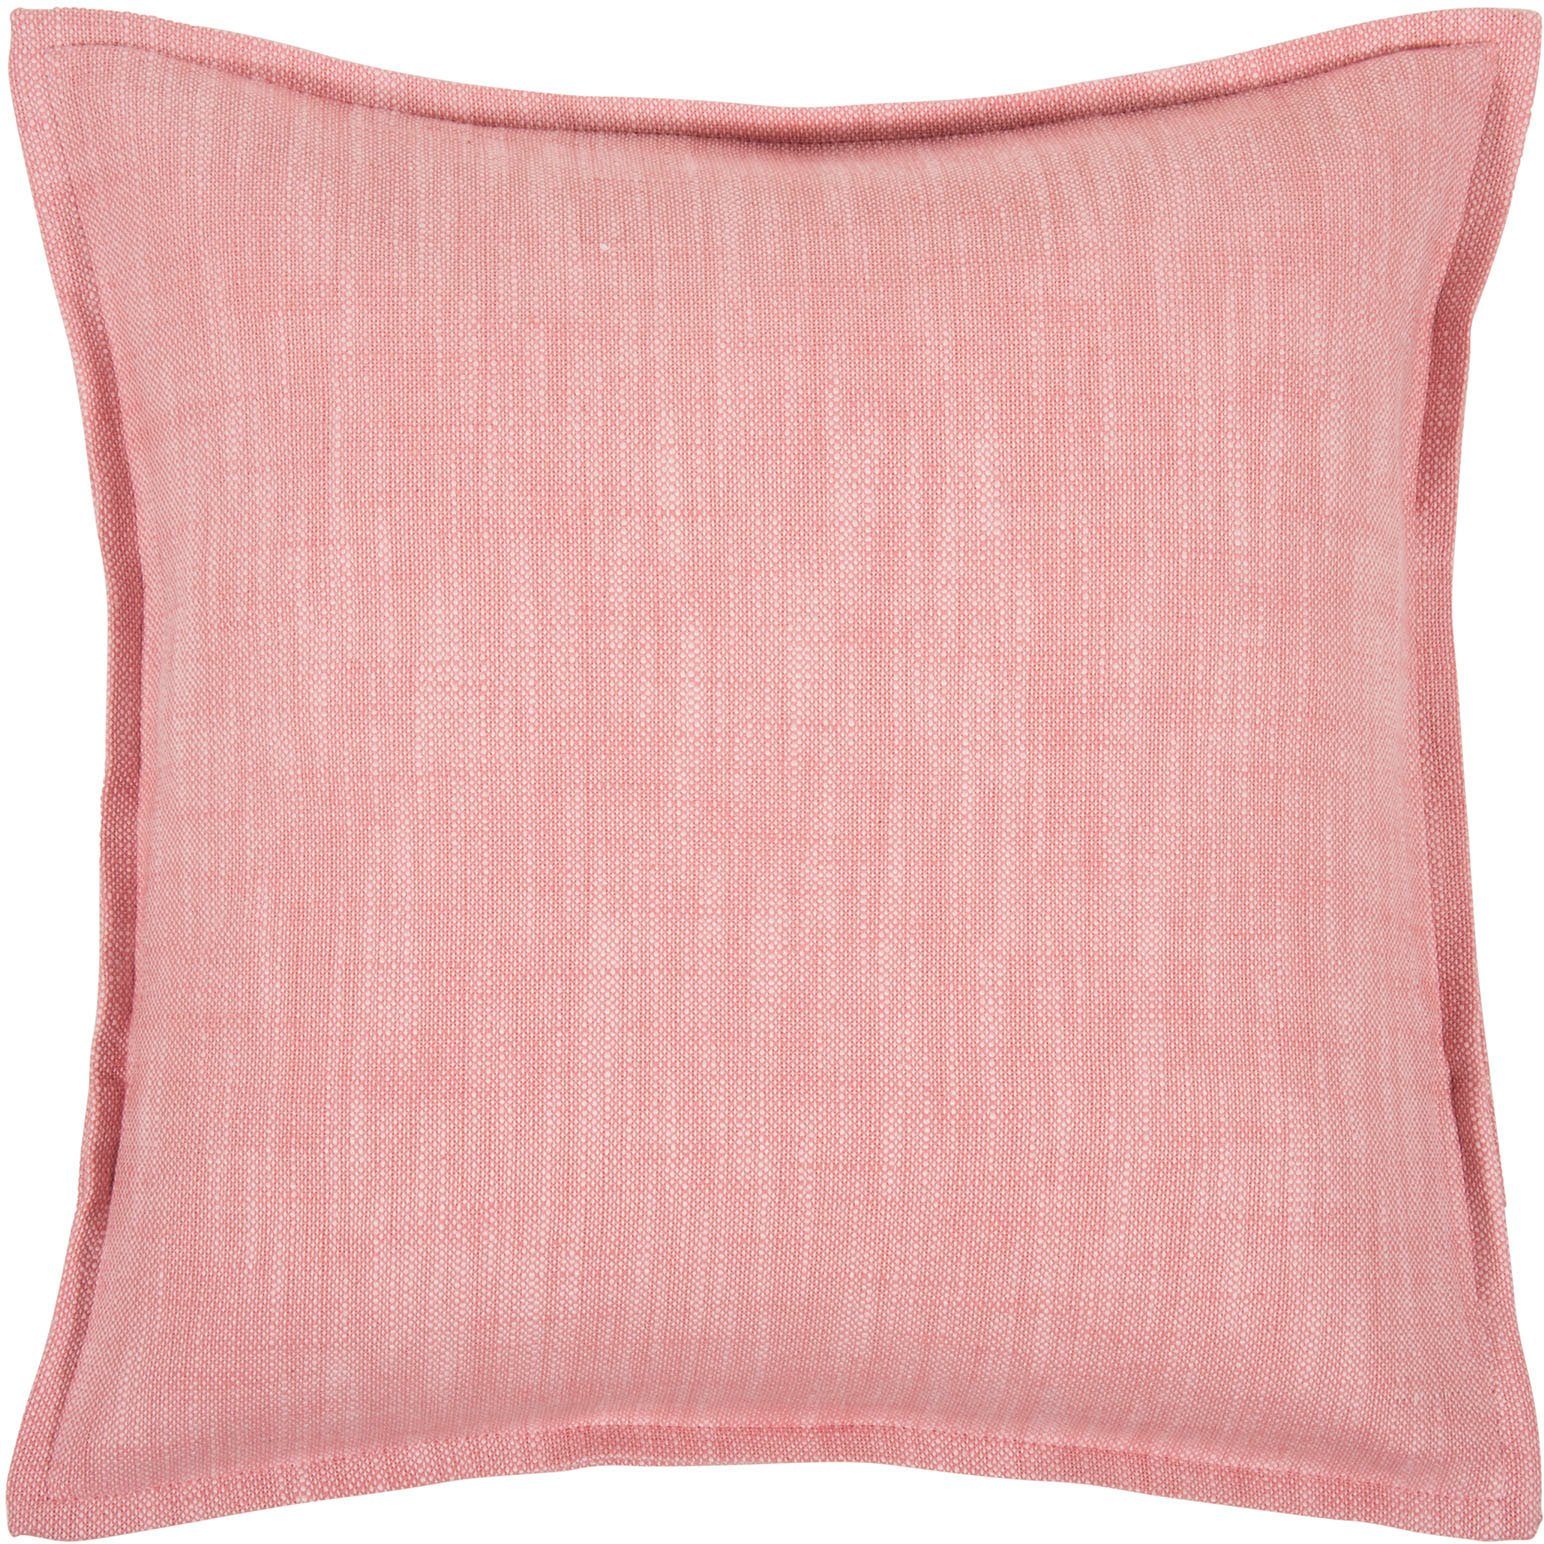 PAD Dekokissen Reflex, einzigartiges Design, Kissenhülle ohne Füllung, 1 Stück pink